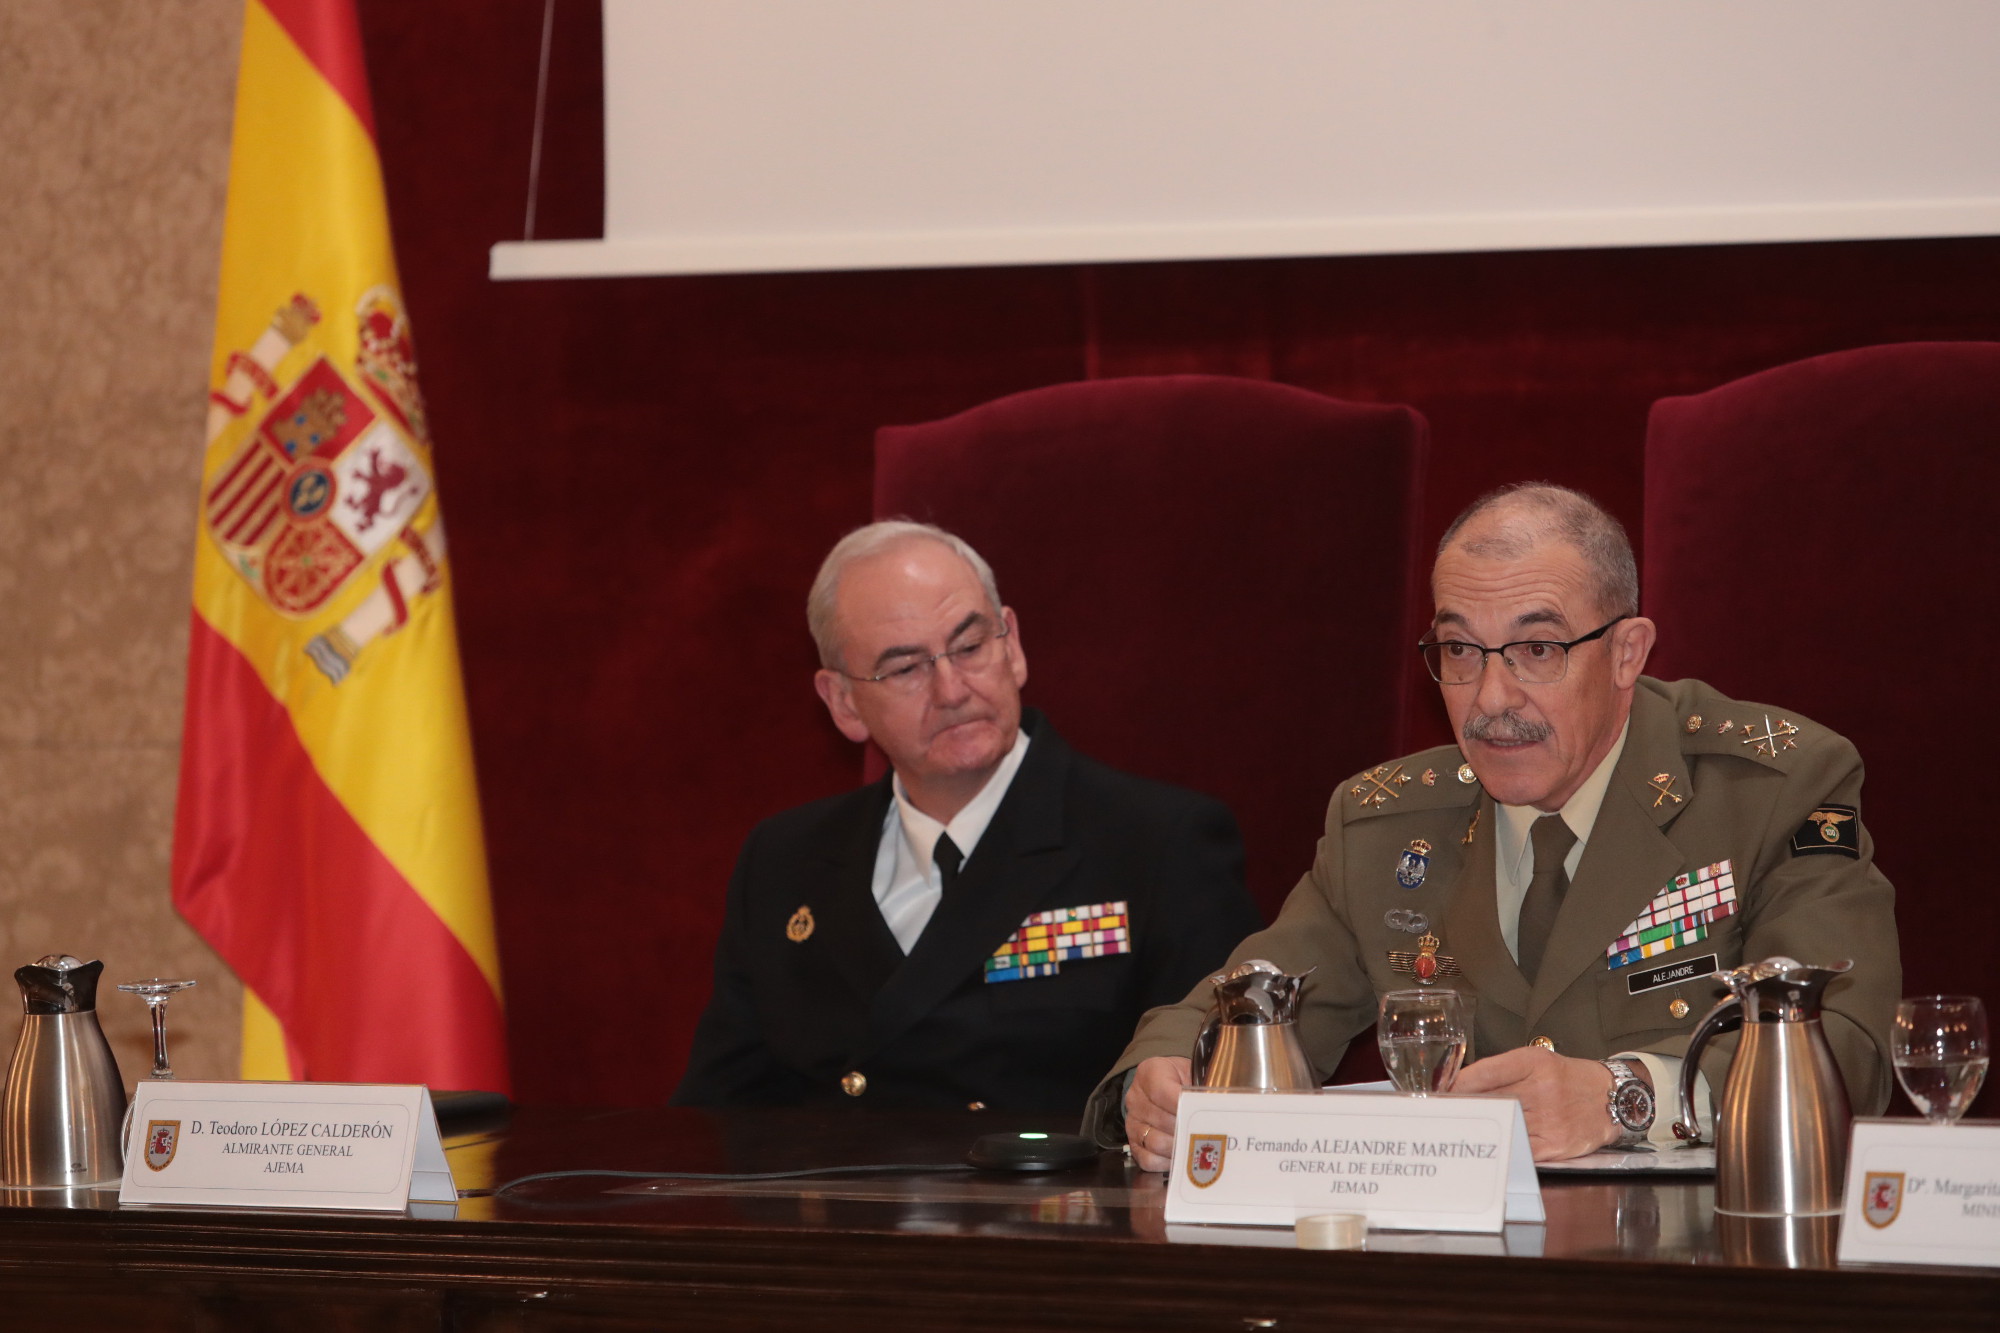 El JEMAD destaca la labor del general Gutiérrez Mellado para impulsar unas Fuerzas Armadas modernas y al servicio de España